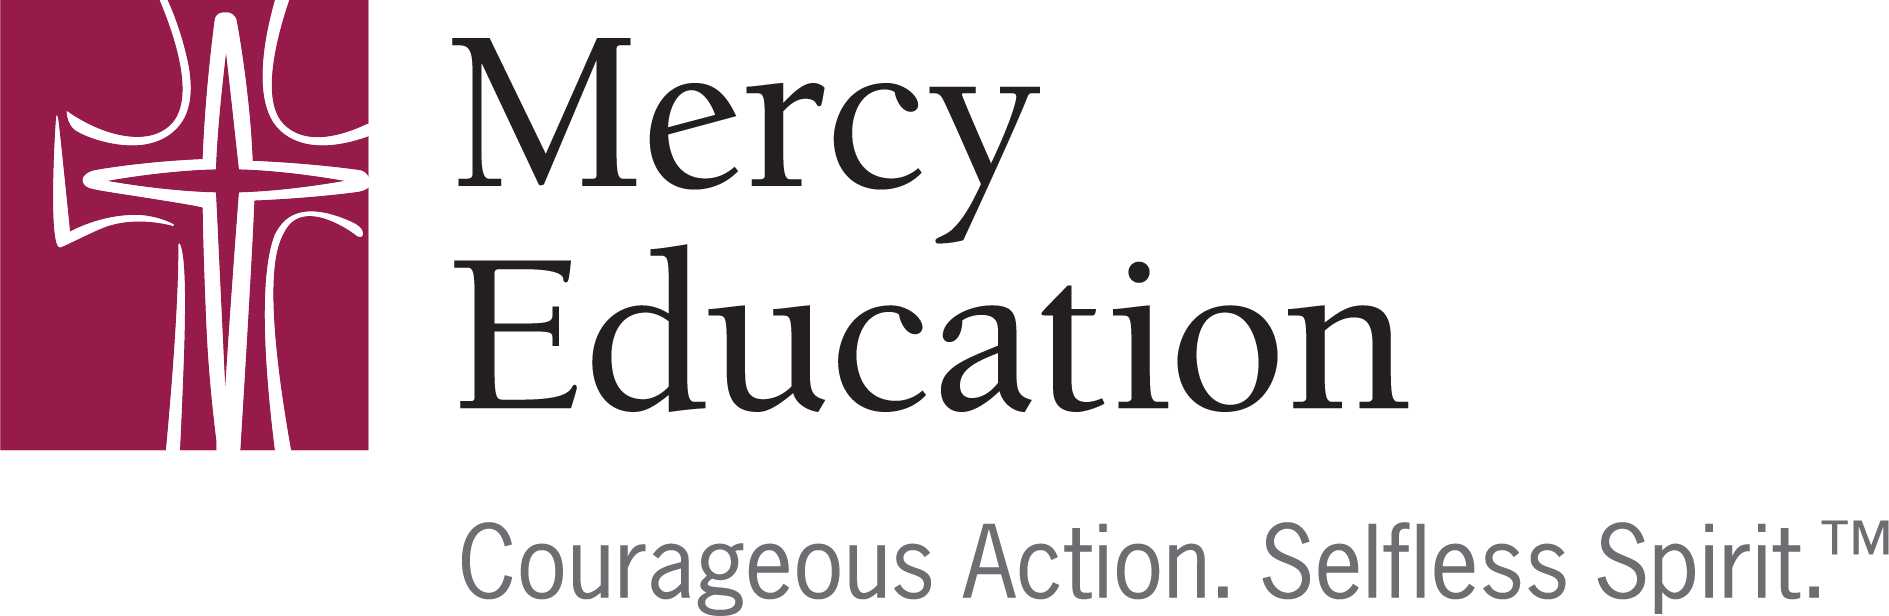 Mercy Education logo